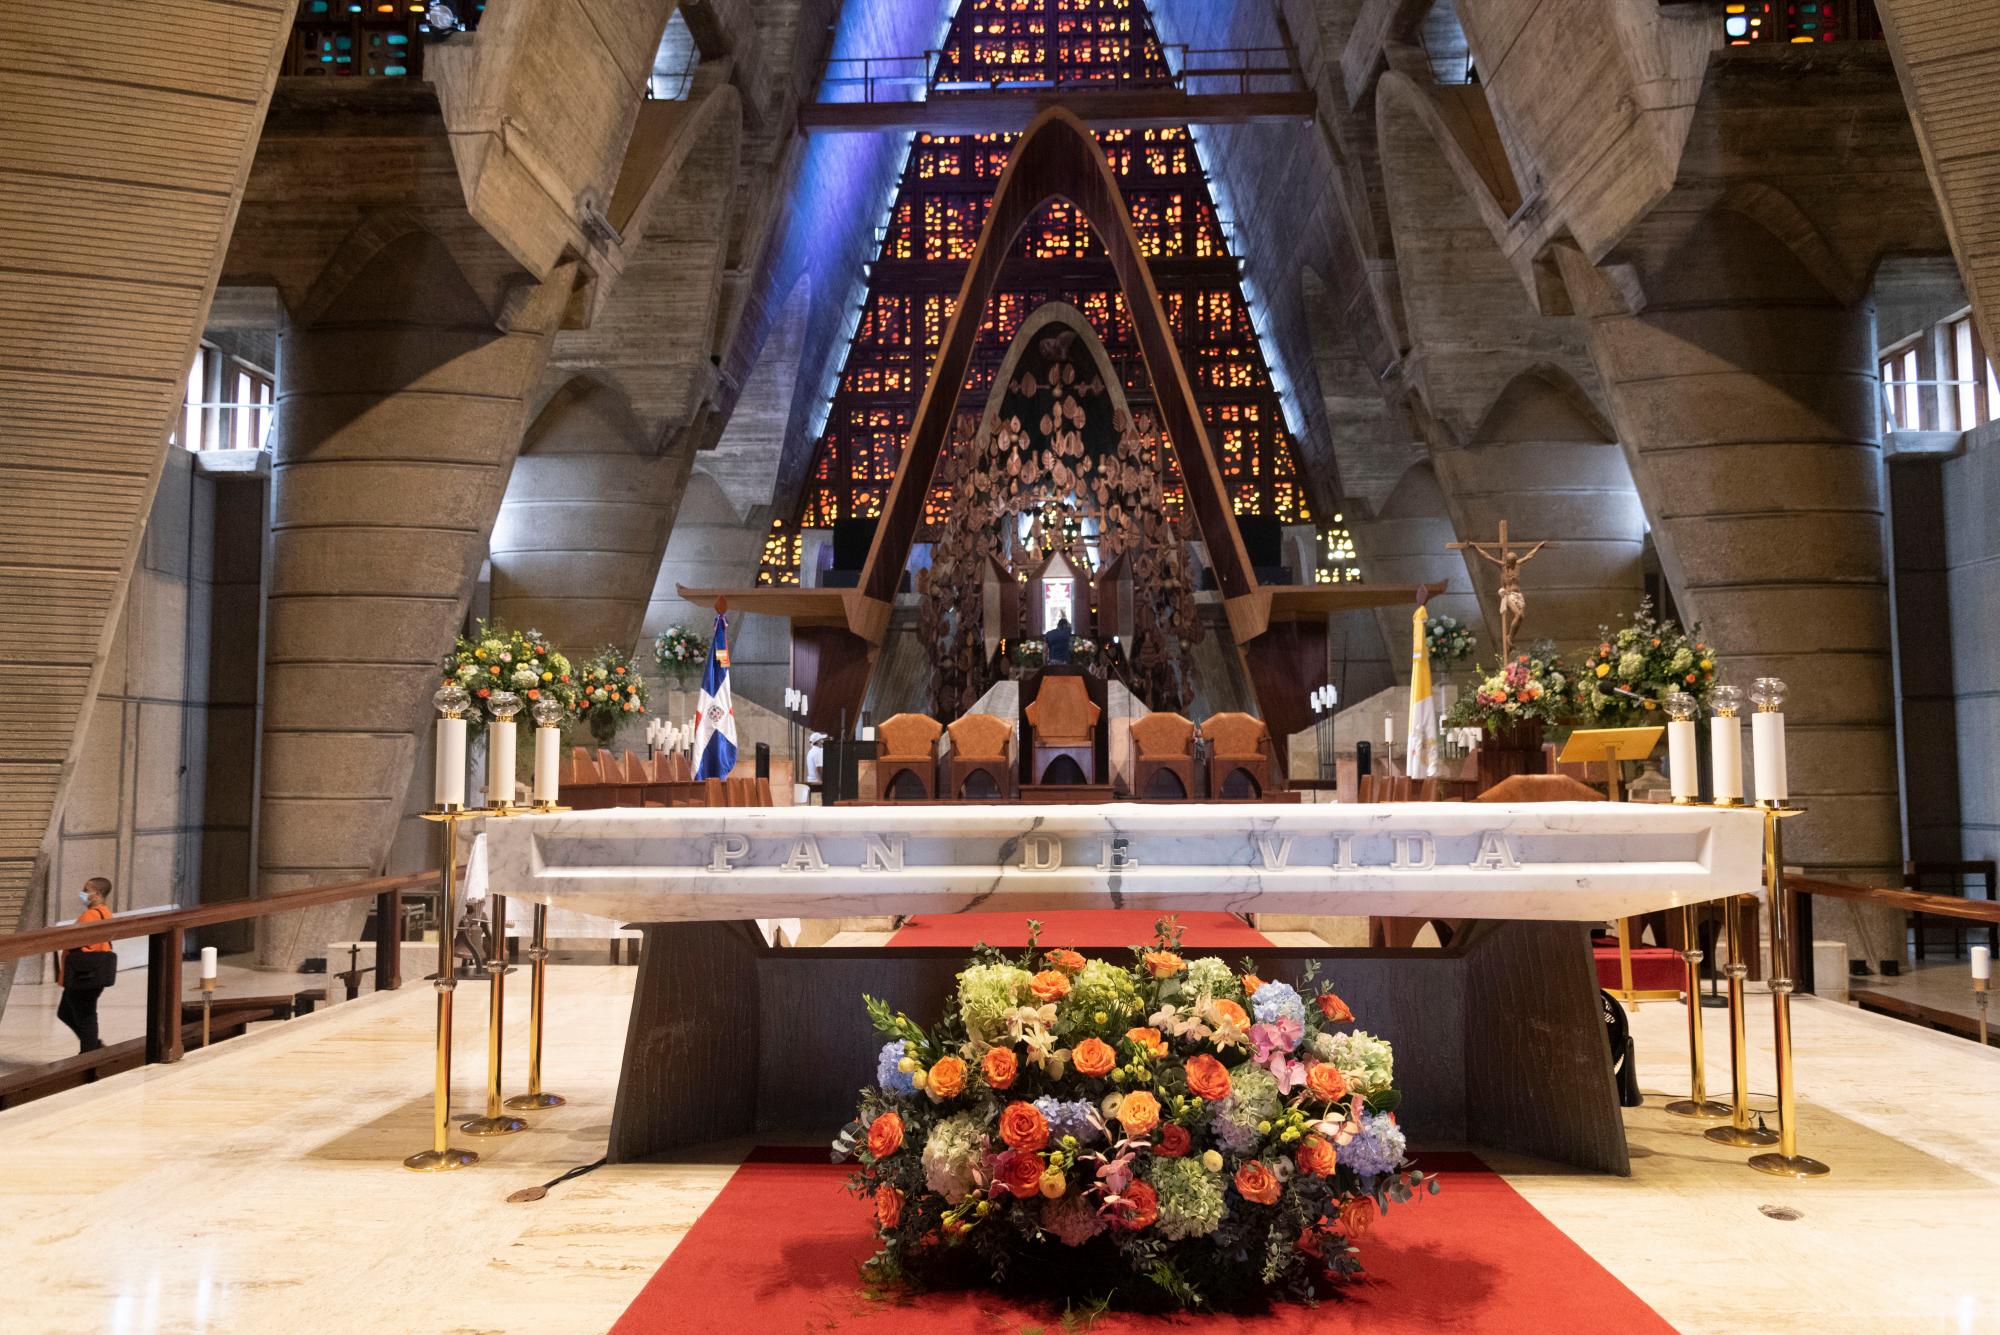 La majestuosidad del altar estuvo como cada año.